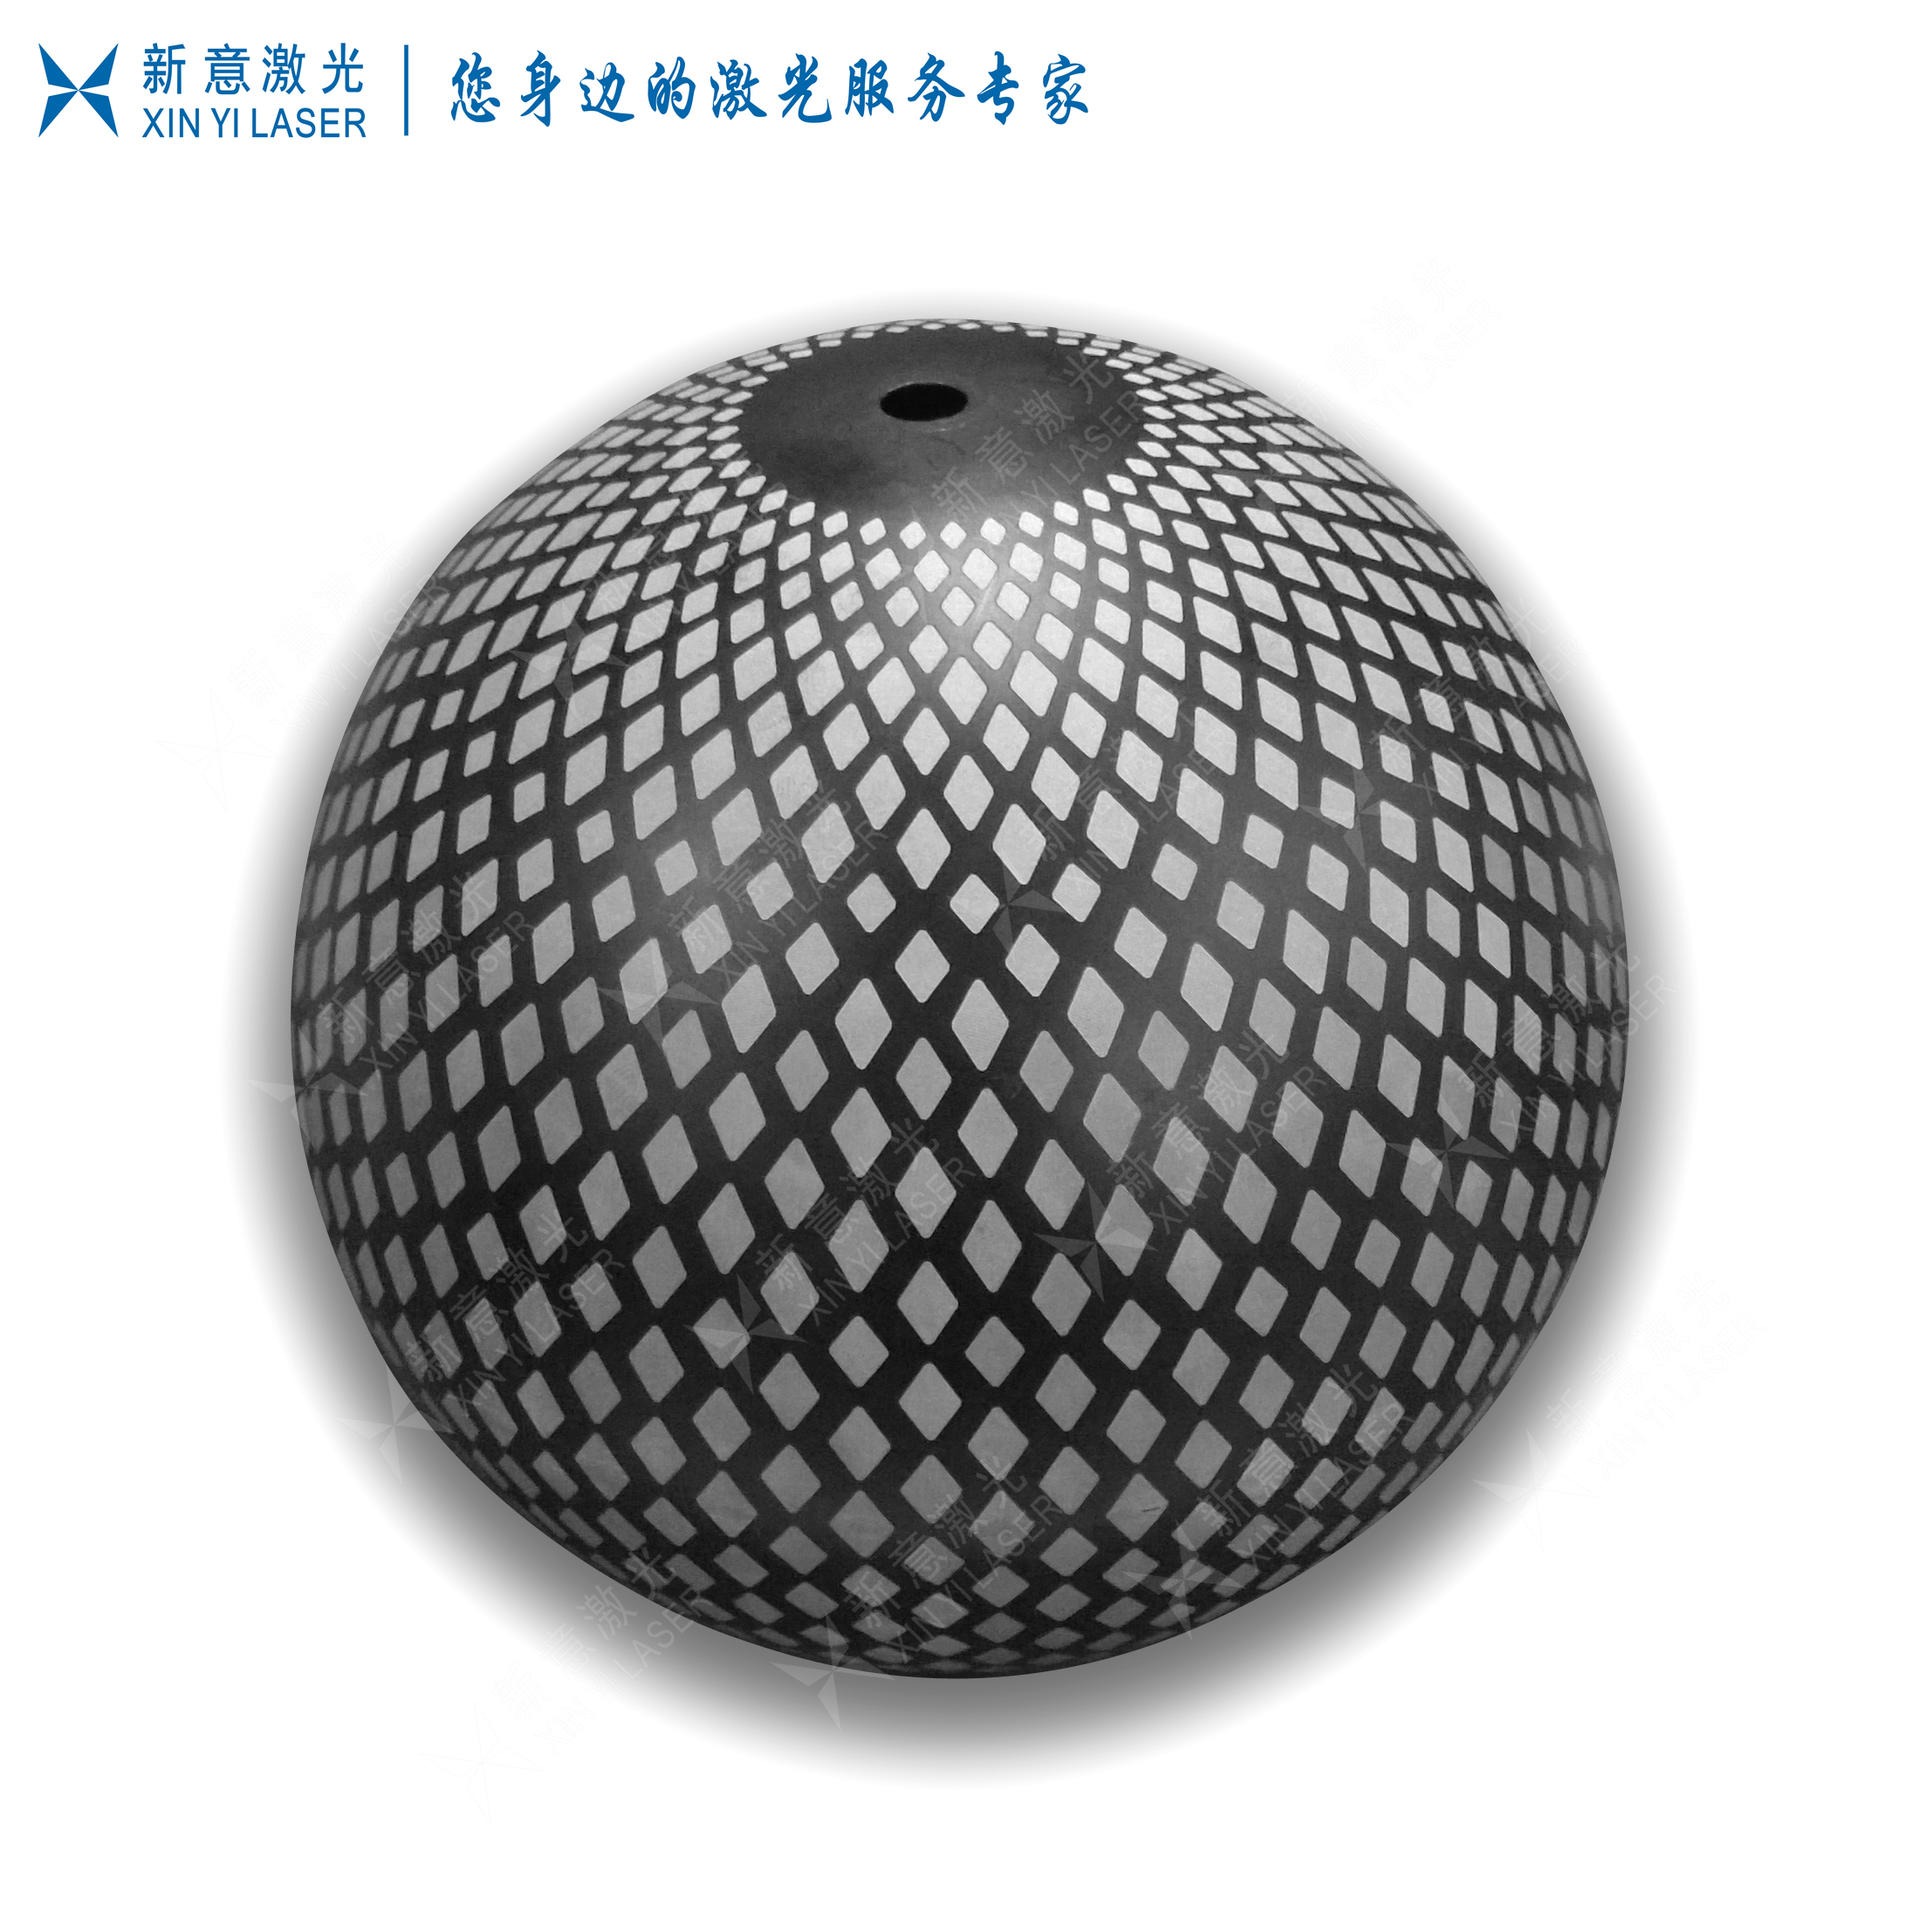 3D激光打标加工 提供圆柱 圆锥 球形产品 3D激光镭射加工 3D激光雕刻加工 3D激光加工 3D激光镭雕加工